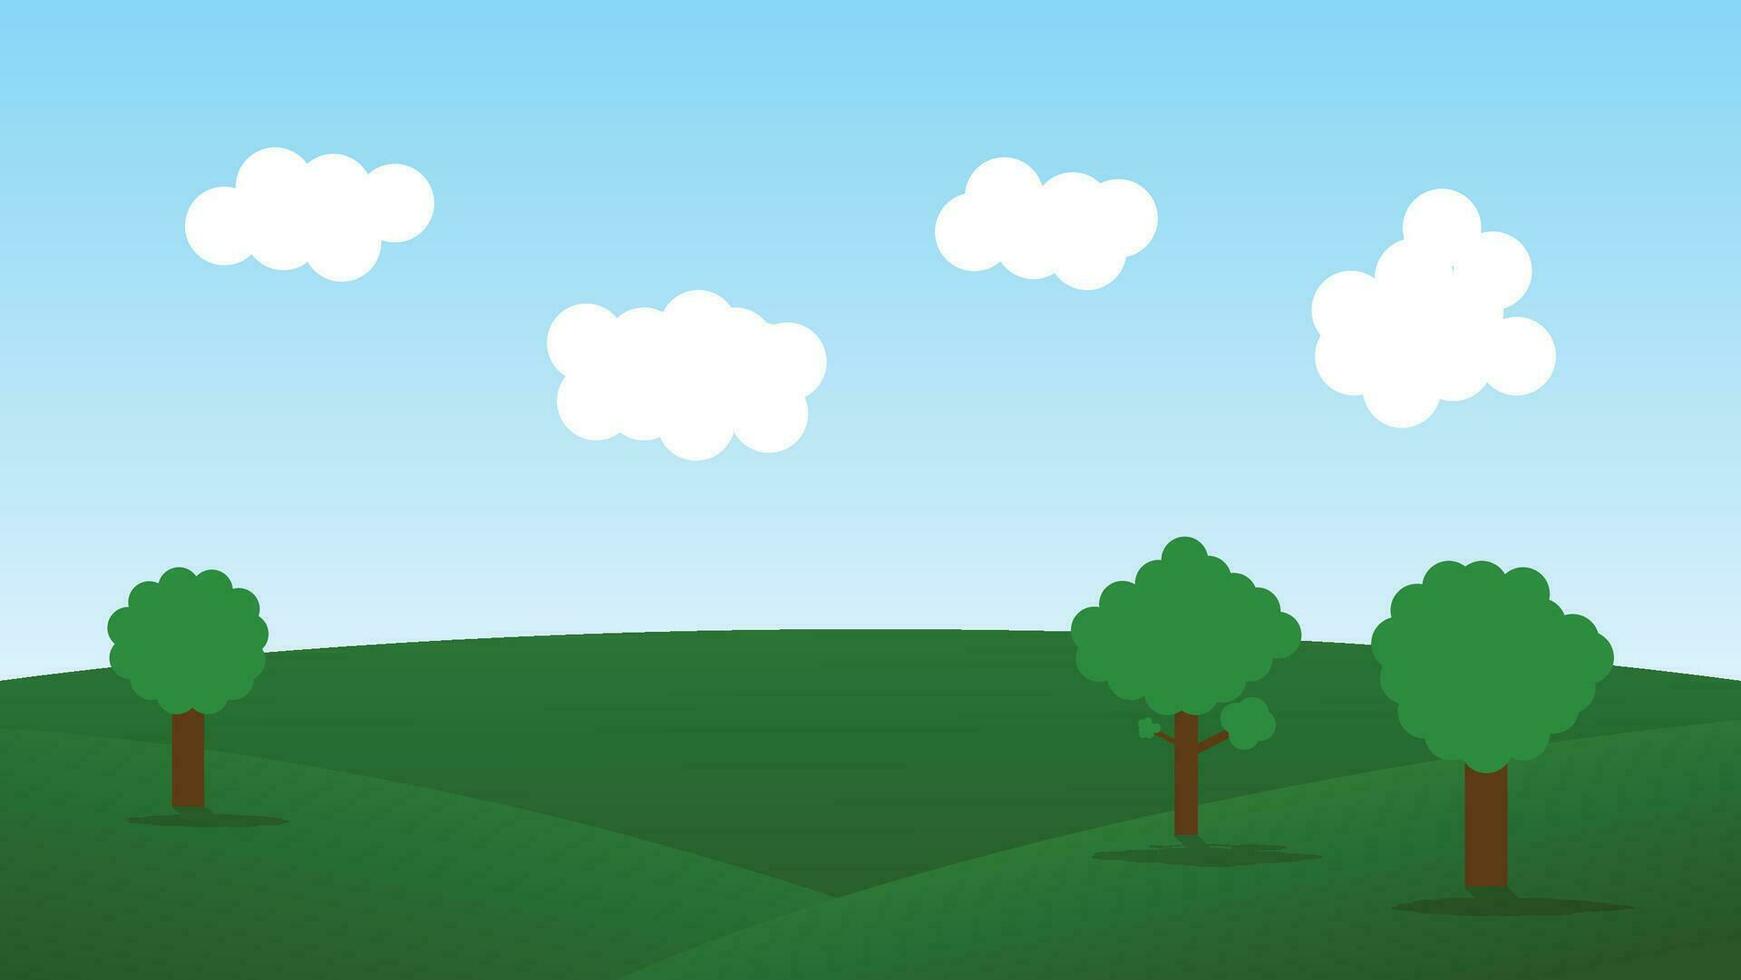 scena del fumetto del paesaggio con le colline verdi e la nuvola bianca nella priorità bassa del cielo blu di estate vettore